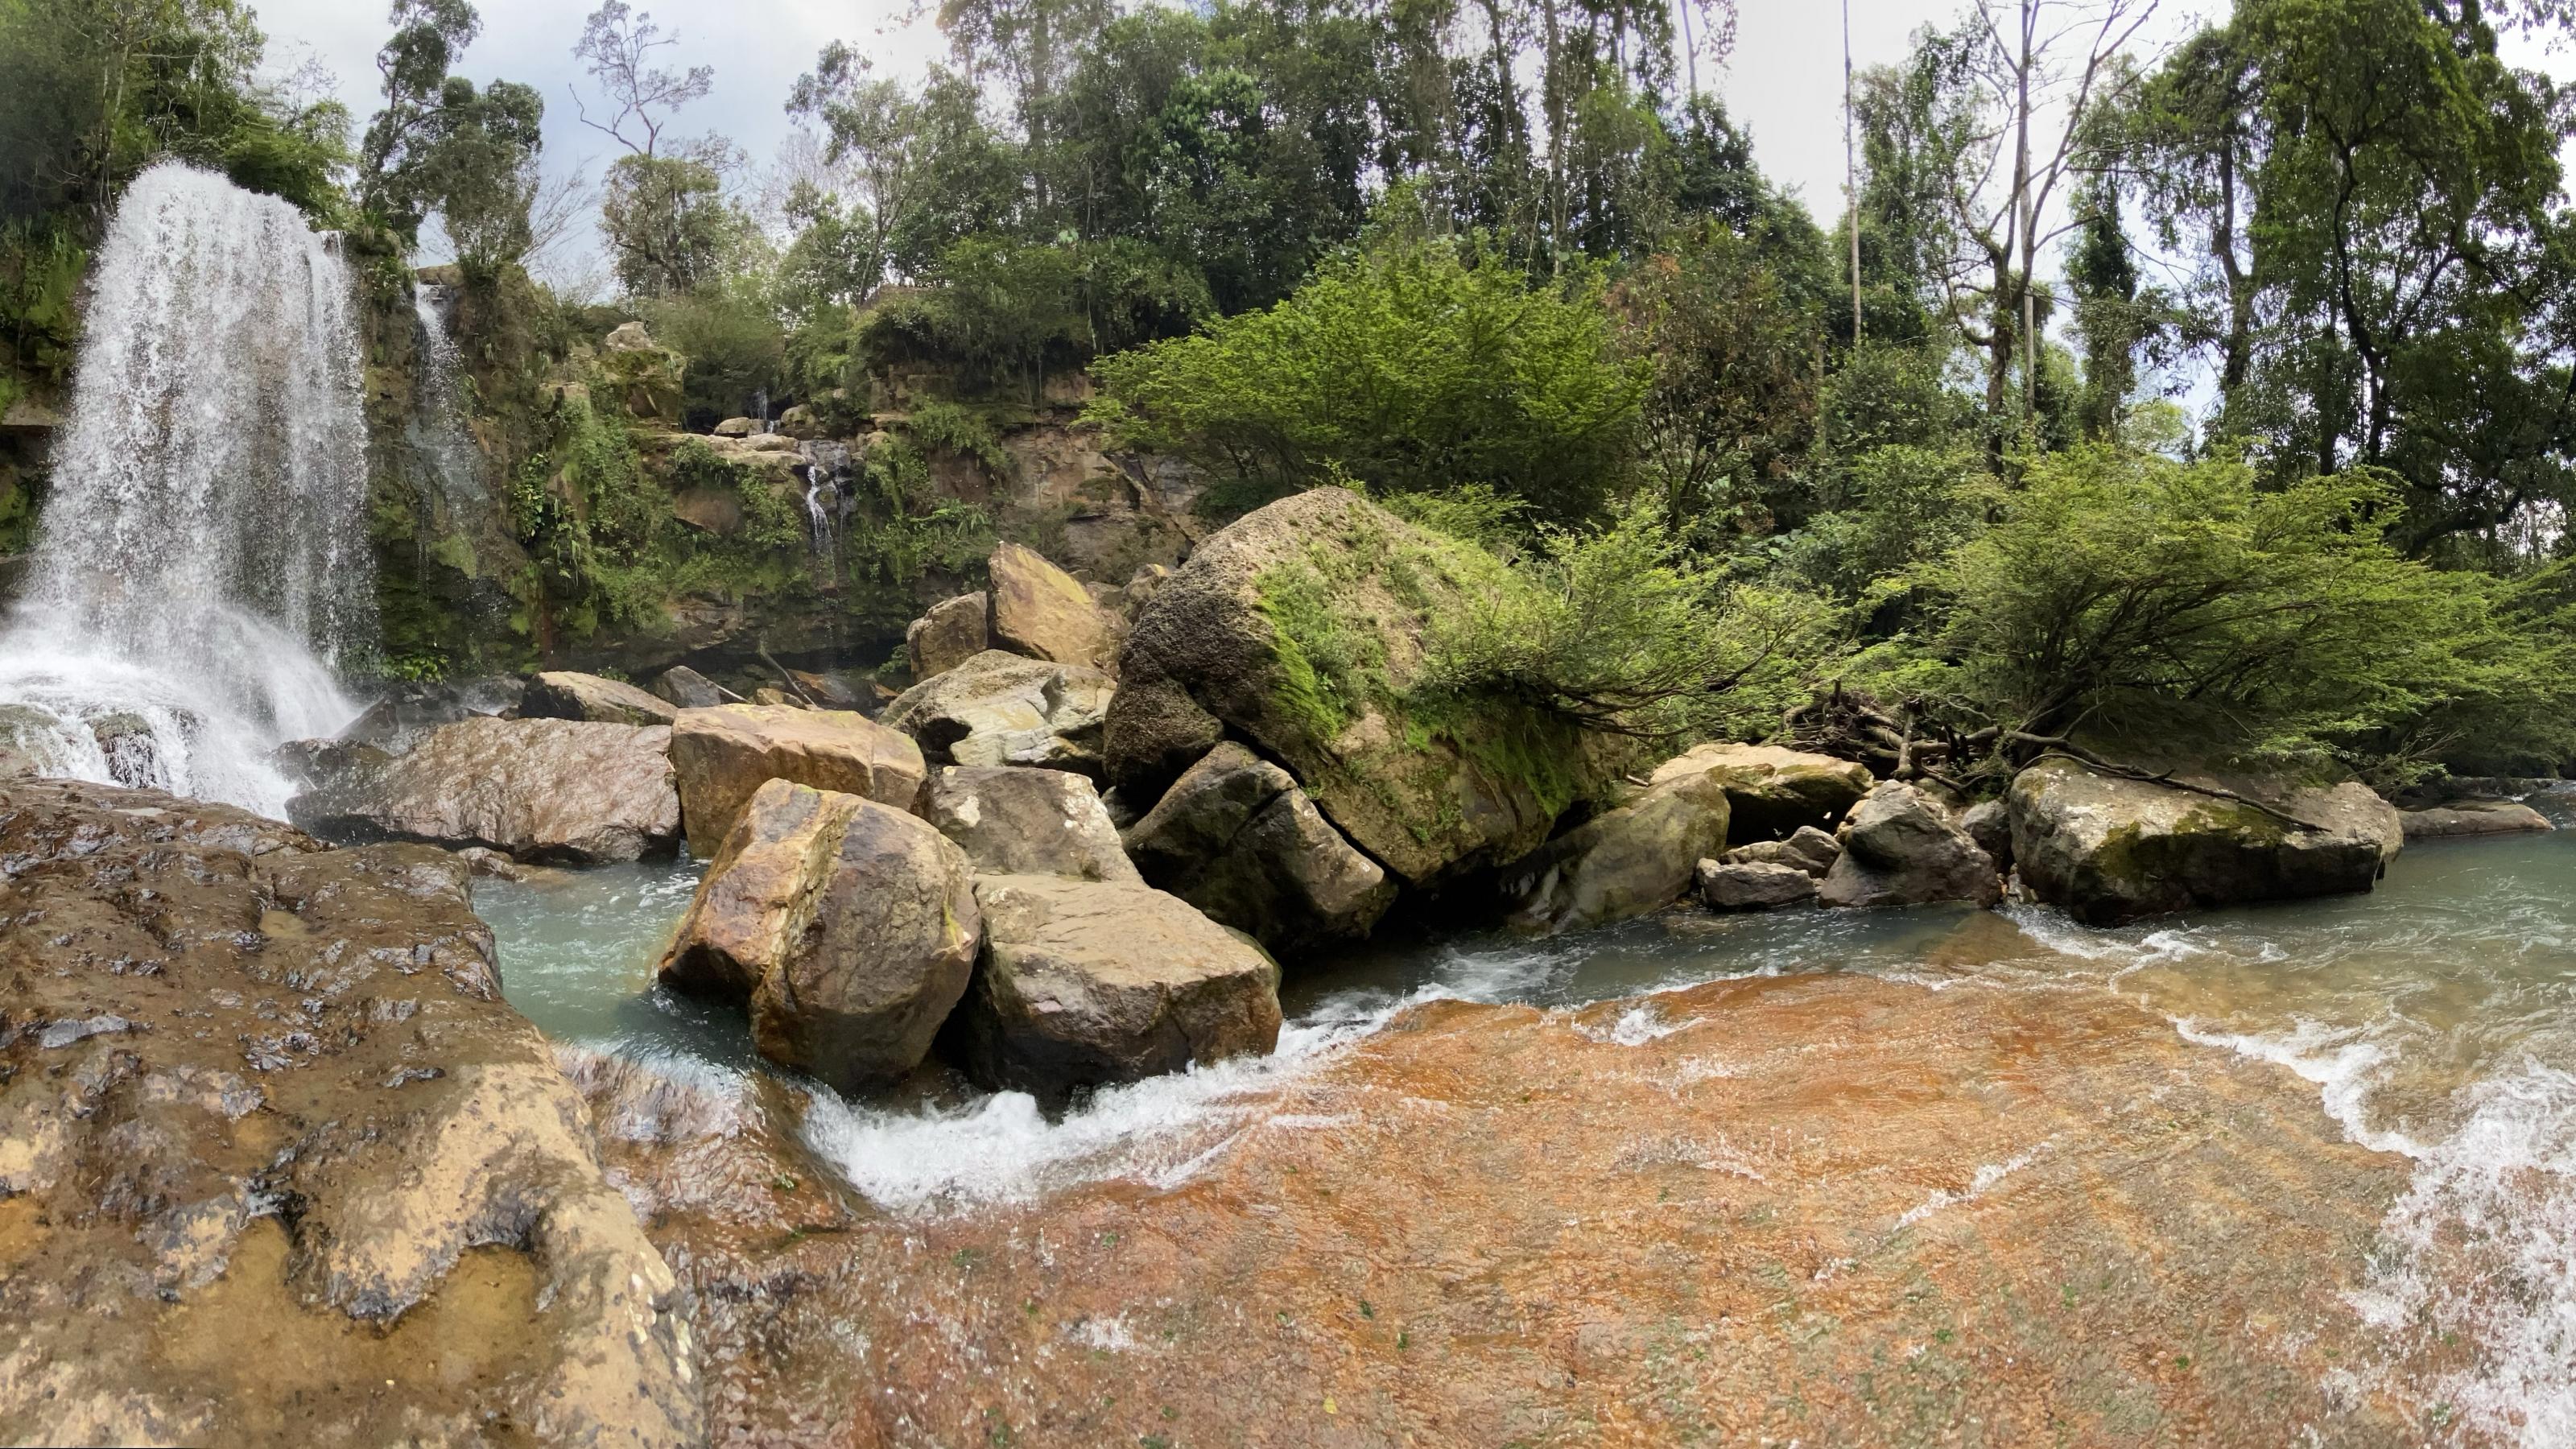 Links ein Wasserfall, der in einen schmalen, klaren Fluss mündet, dahinter Felsen.